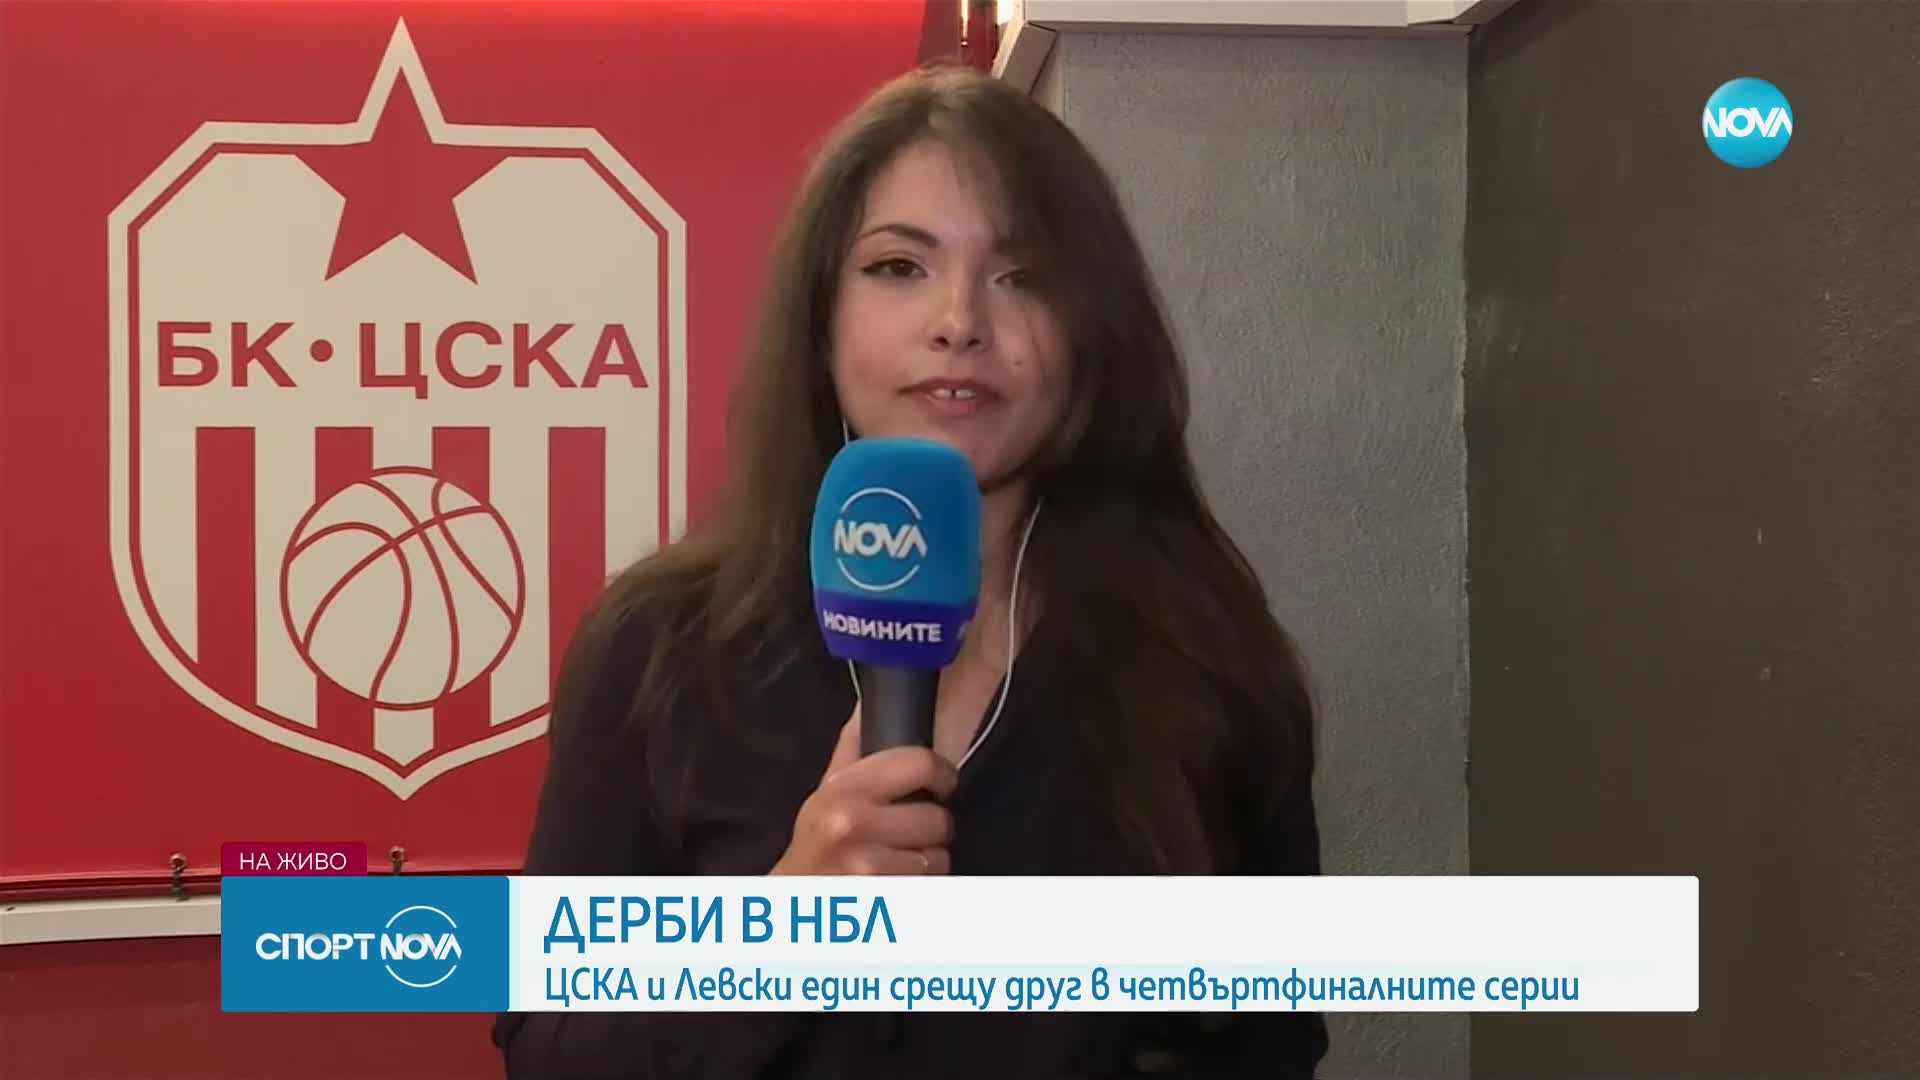 Дерби в баскета: ЦСКА и Левски един срещу друг в четвъртфиналните серии